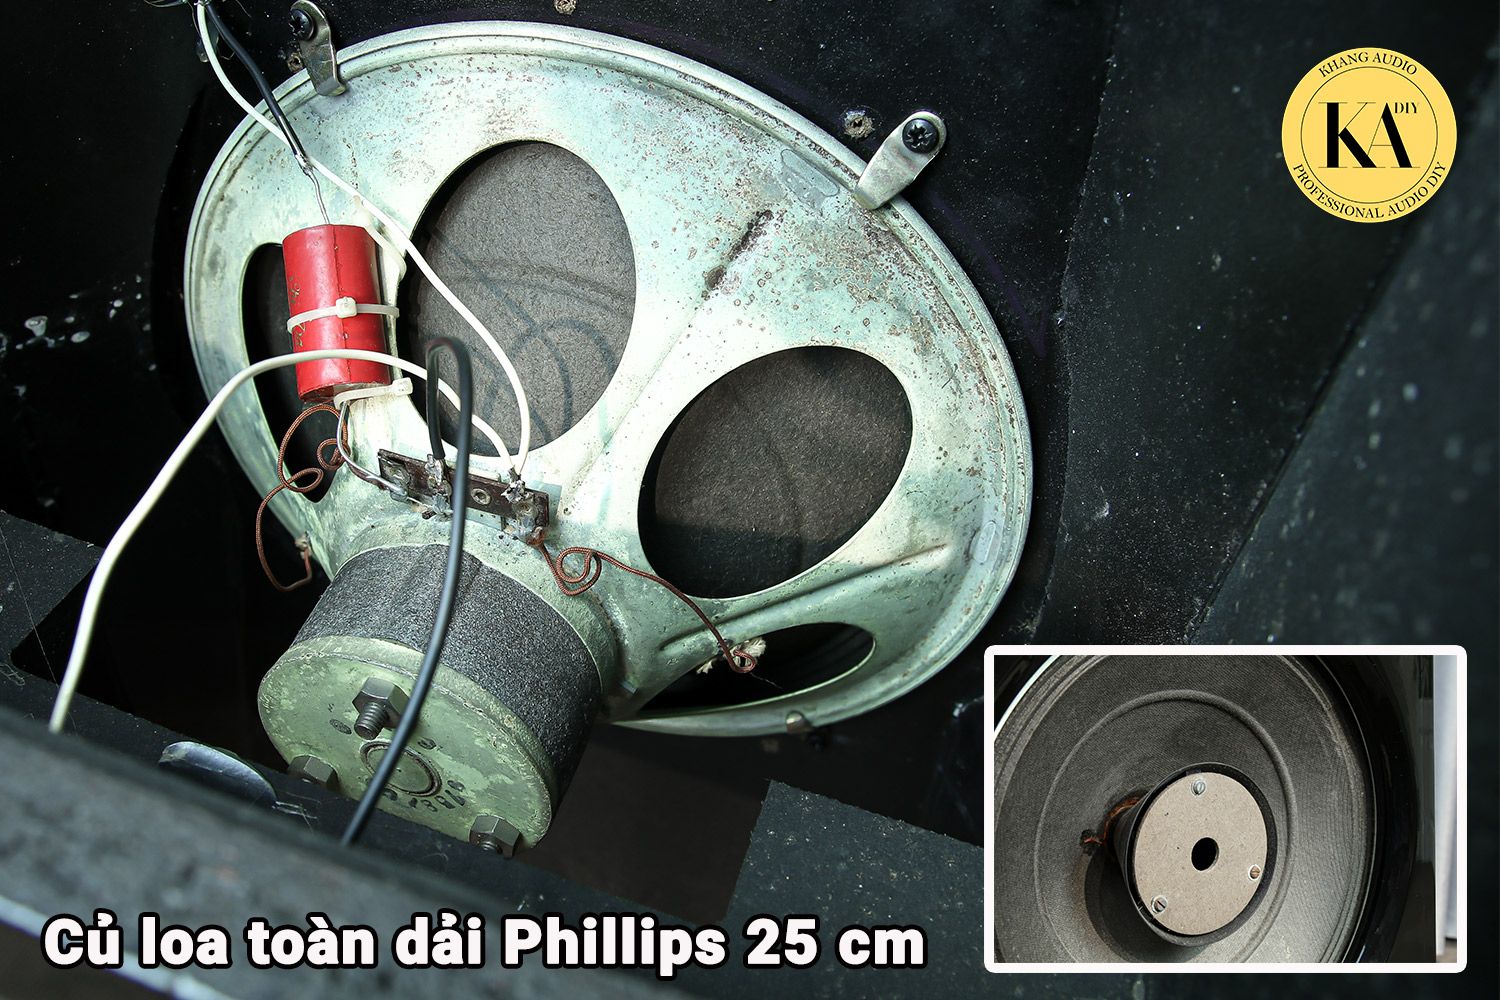 Loa Ván Hở củ loa Philips Khang Audio DIY